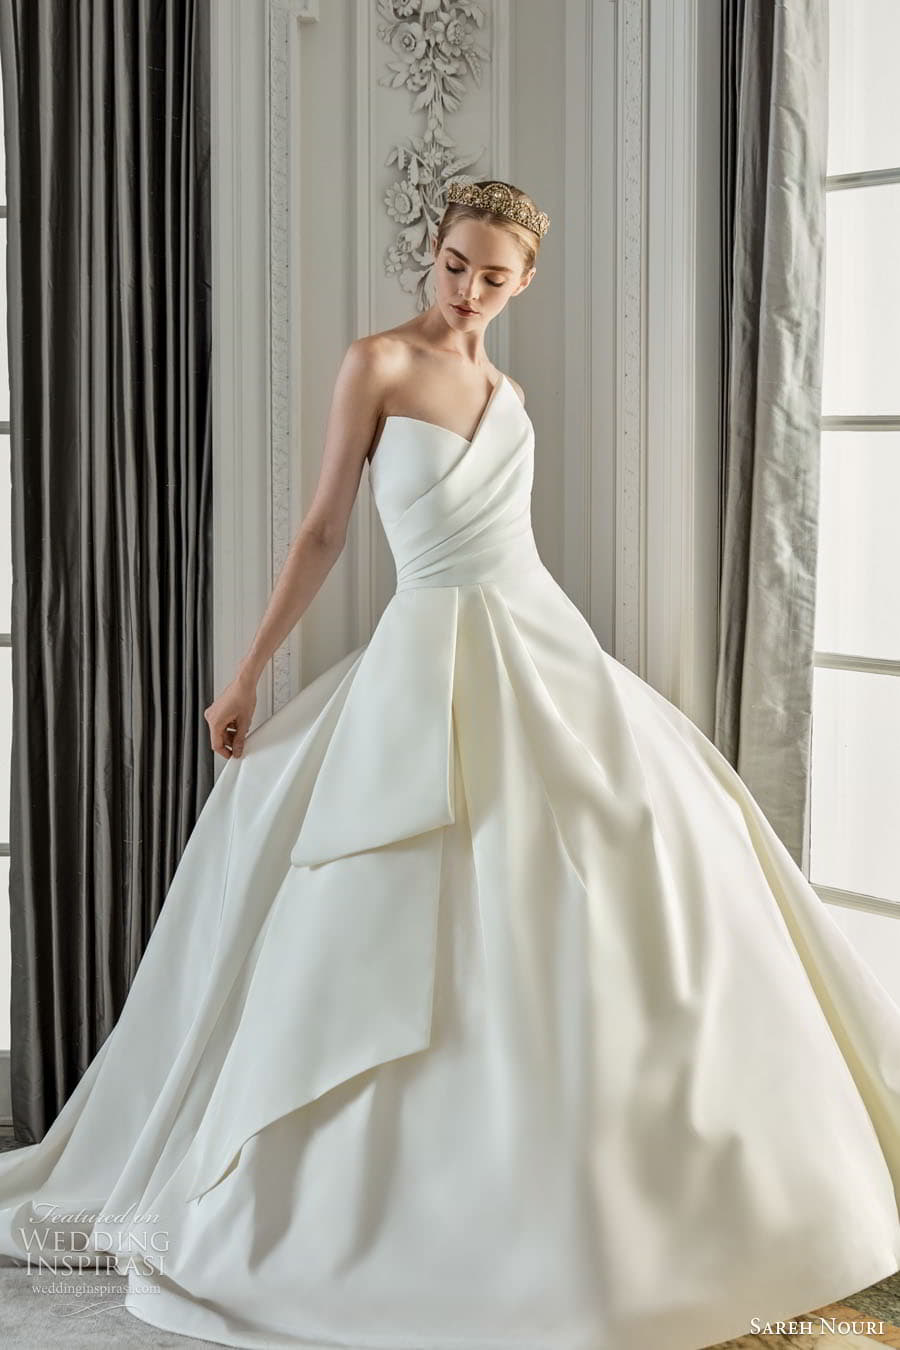 Sareh Nouri ball gown wedding dress